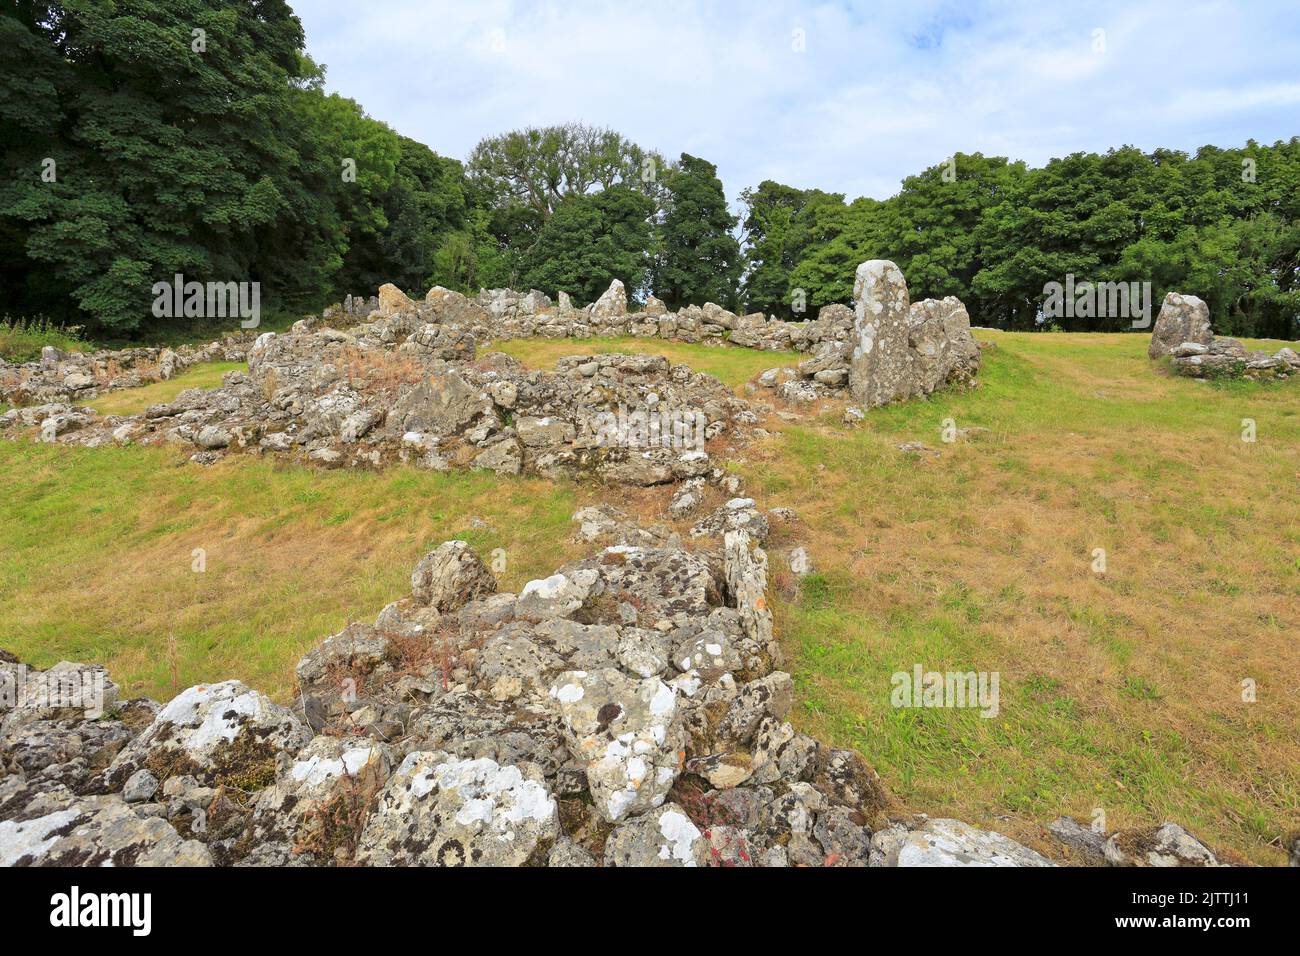 DIN Lligwy antico insediamento in pietra rovinata vicino Moelfre, Isola di Anglesey, Ynys Mon, Galles del Nord, Regno Unito. Foto Stock